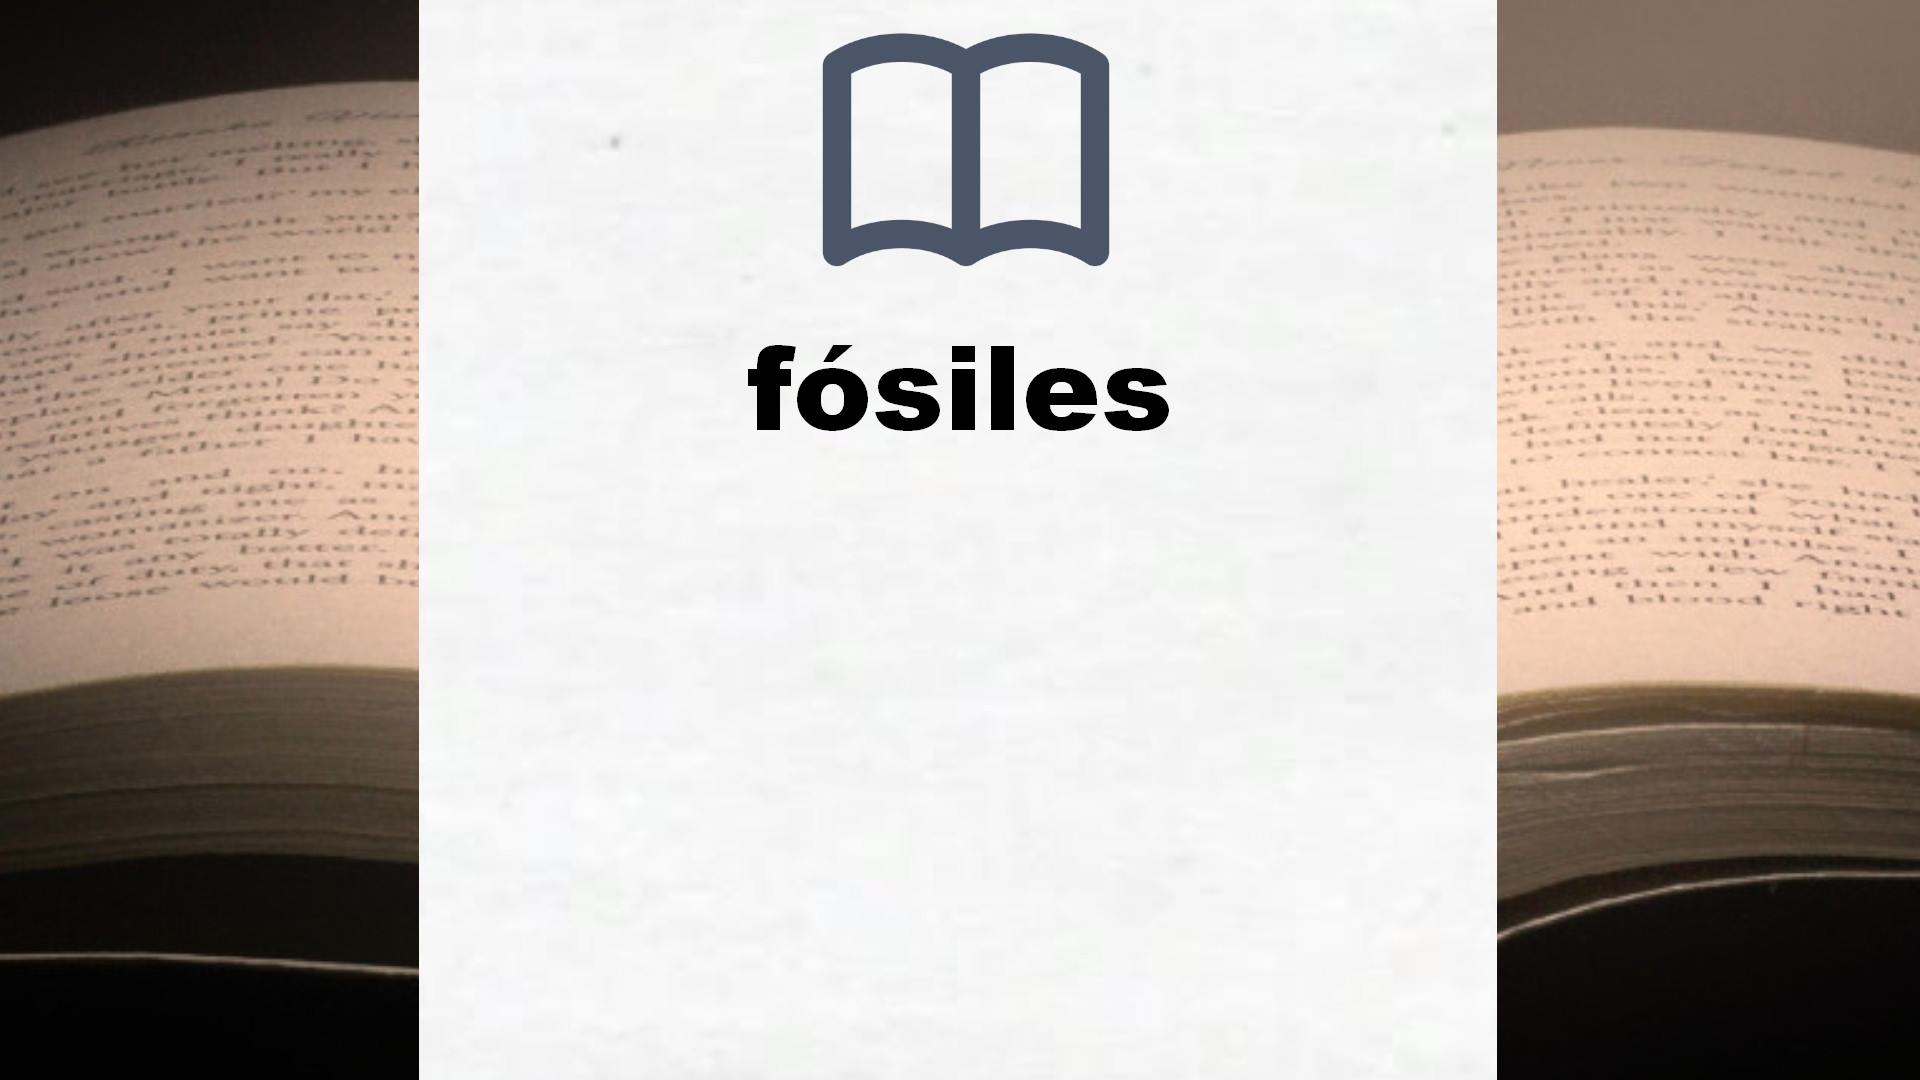 Libros sobre fósiles